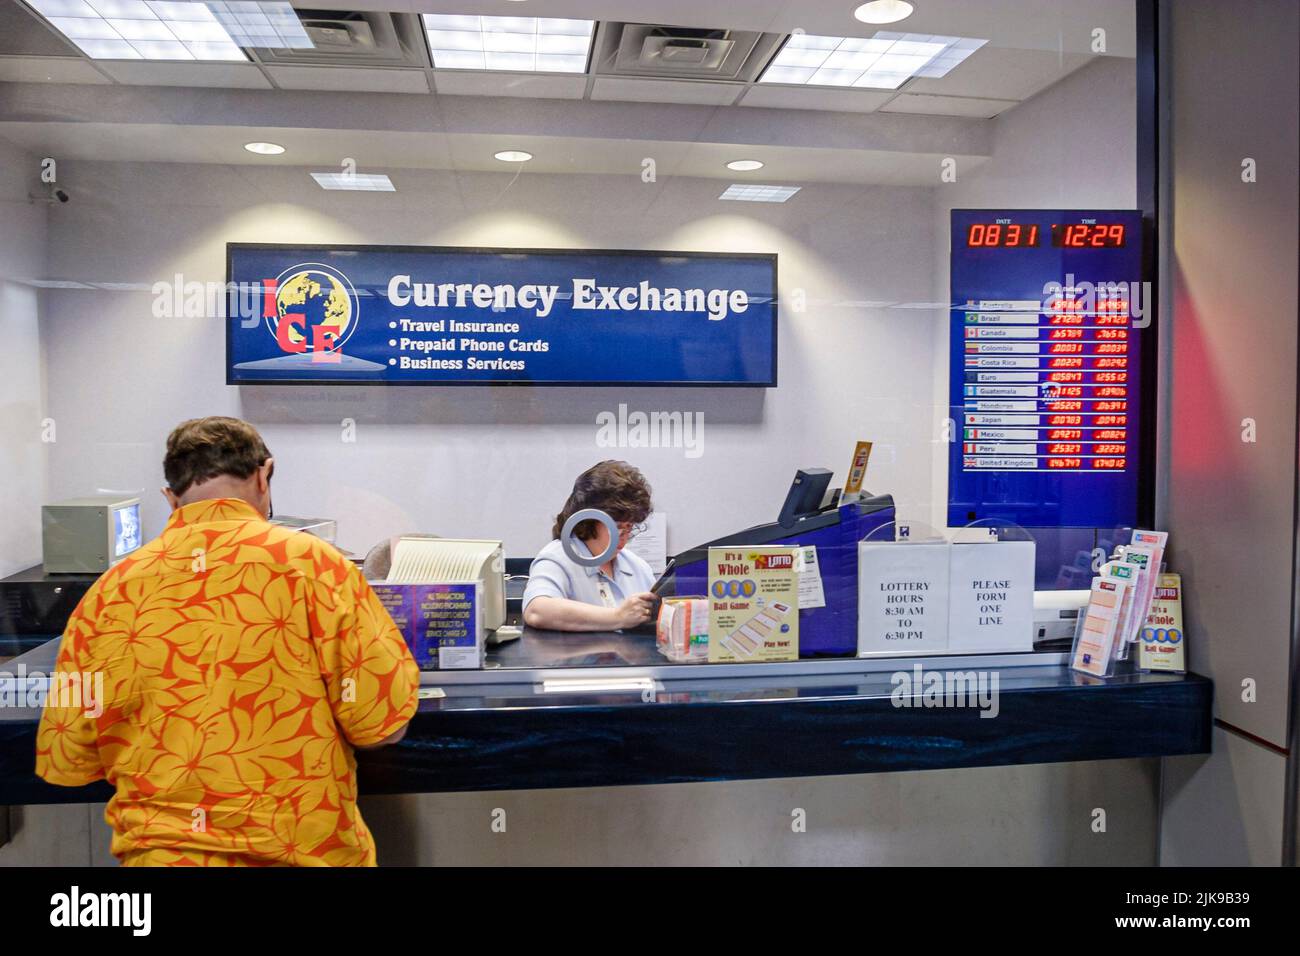 Houston Texas, George Bush Intercontinental Airport, change de monnaie service de fenêtre cambio Voyage assurance, Voyage personnes personne scène Banque D'Images